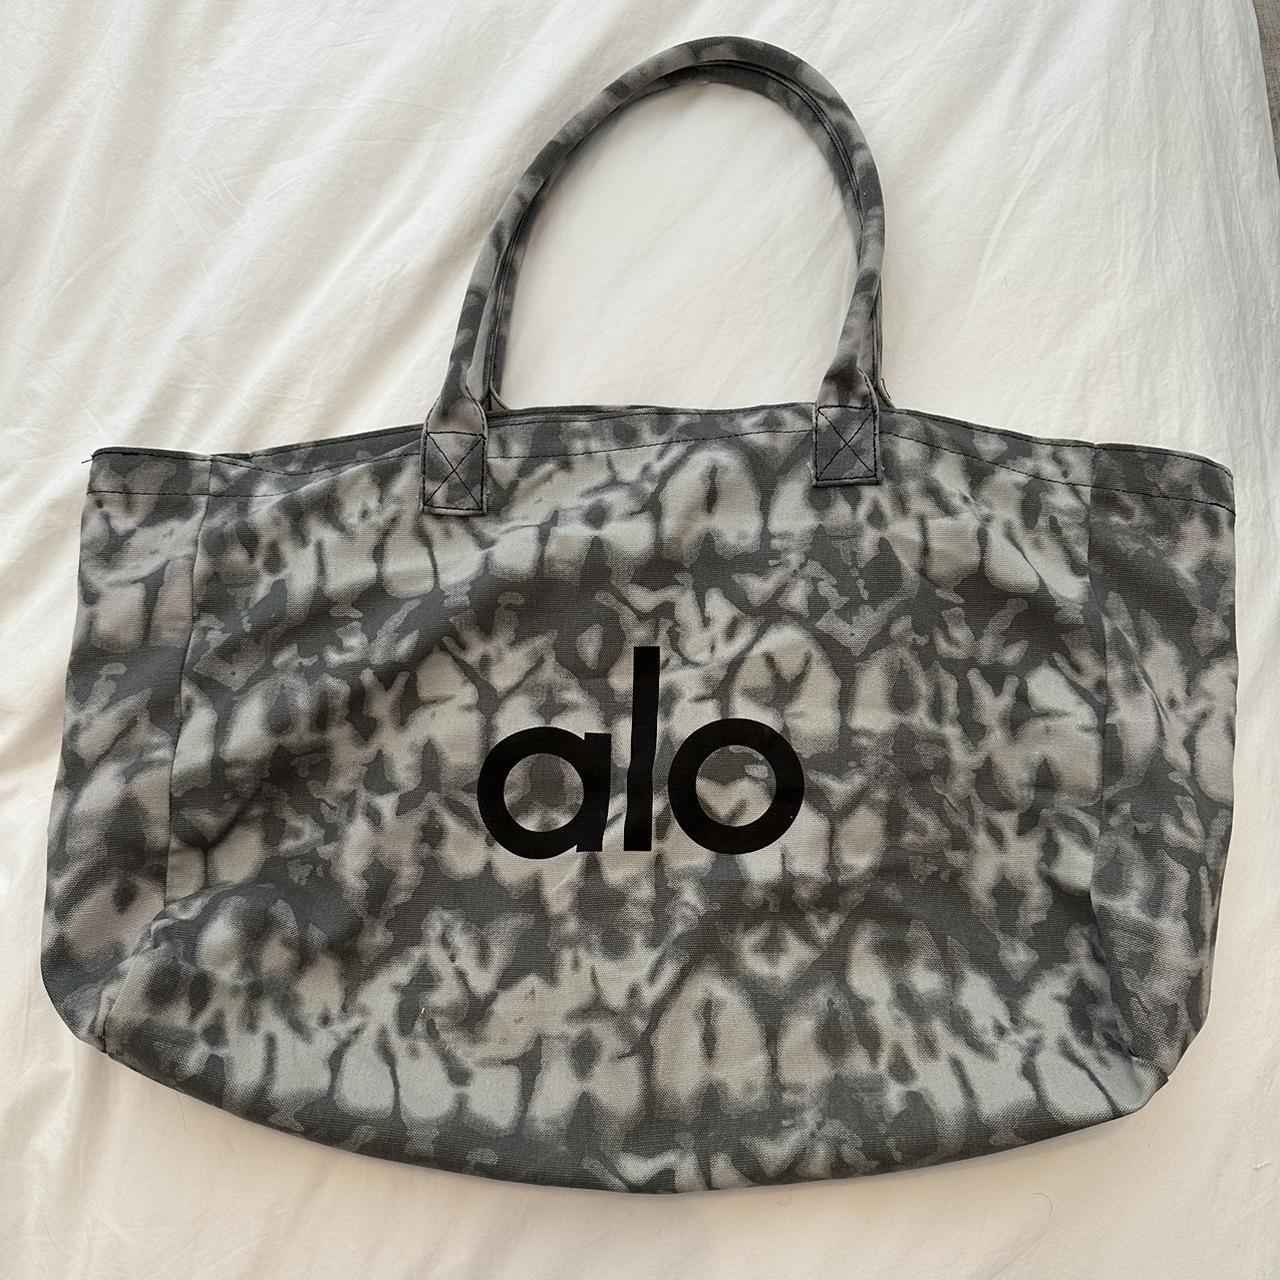 alo canvas tote bag. alo logo on both sides of bag - Depop